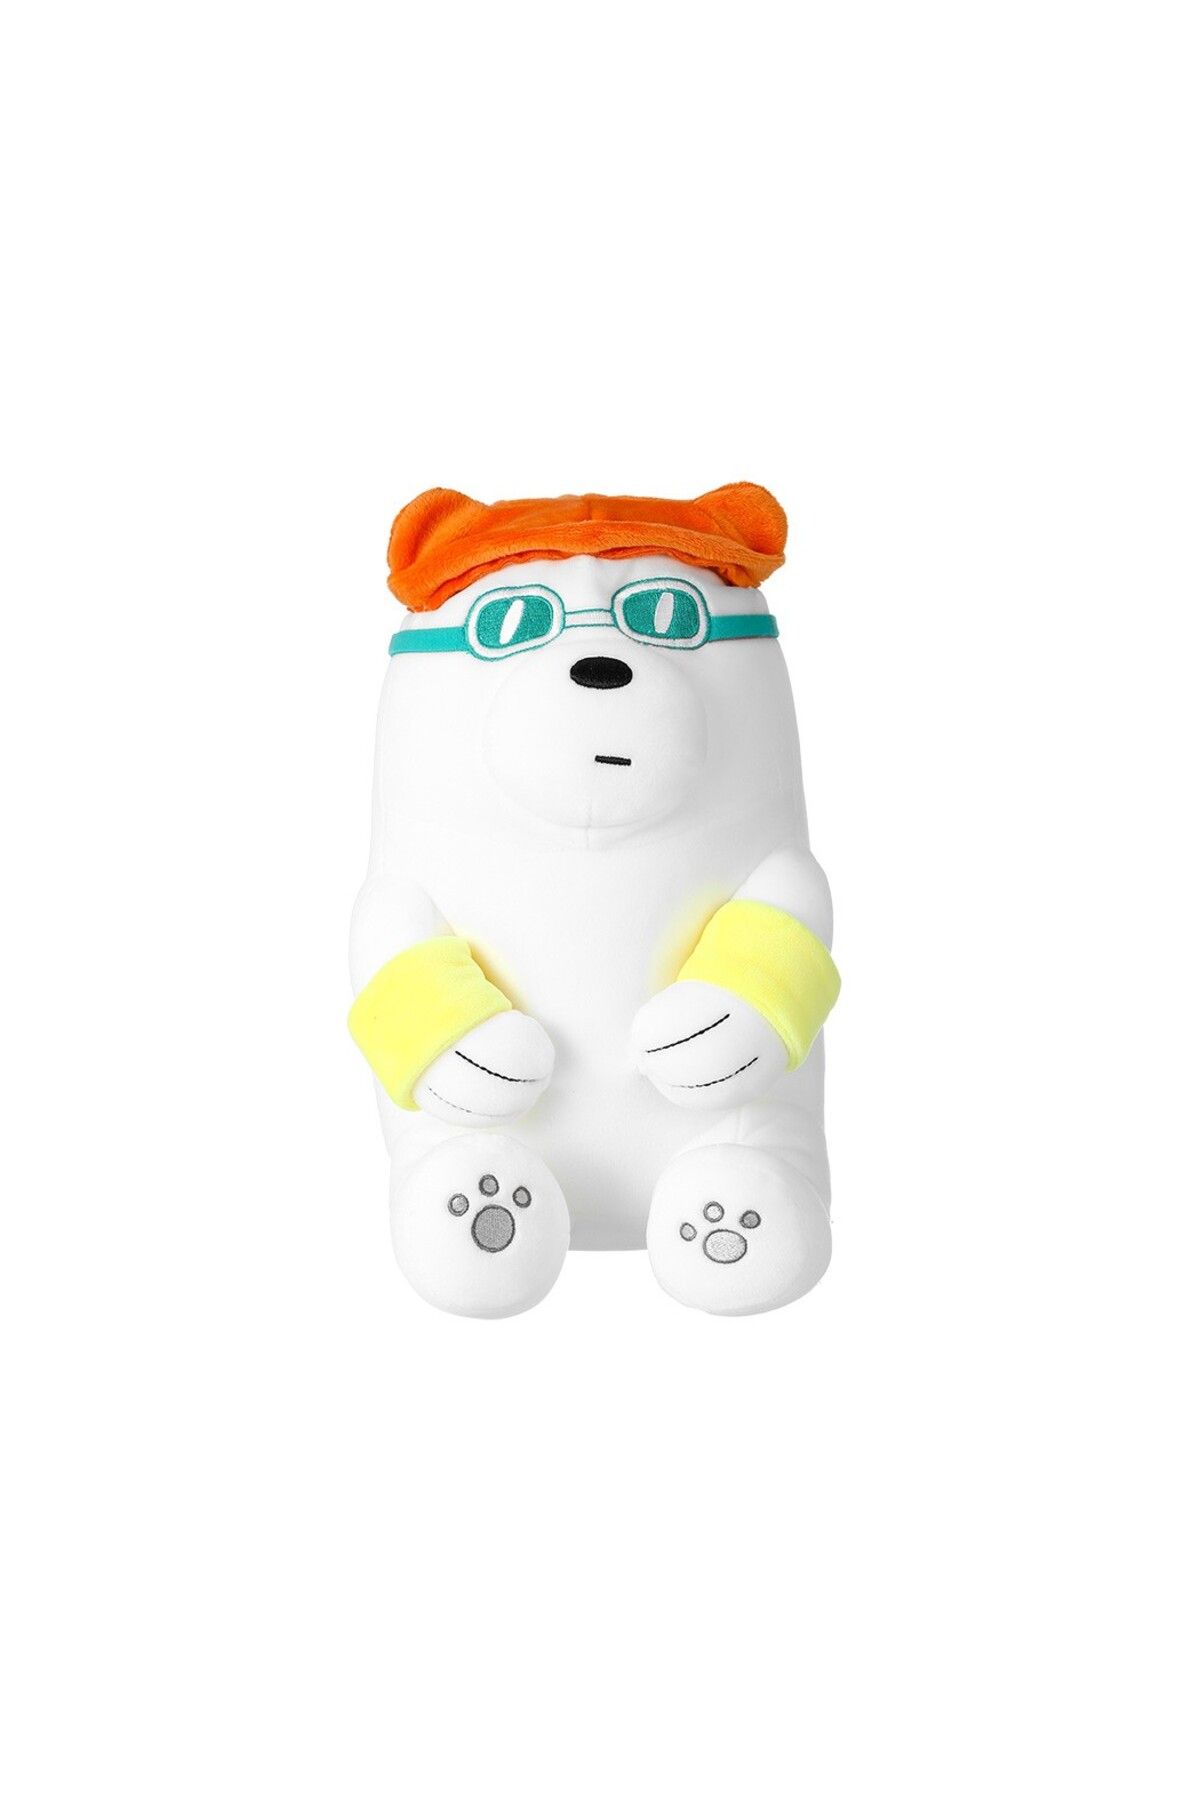 Miniso We Bare Bears Lisanslı Yaz Tatili Serisi Peluş Oyuncak - Kutup Ayısı